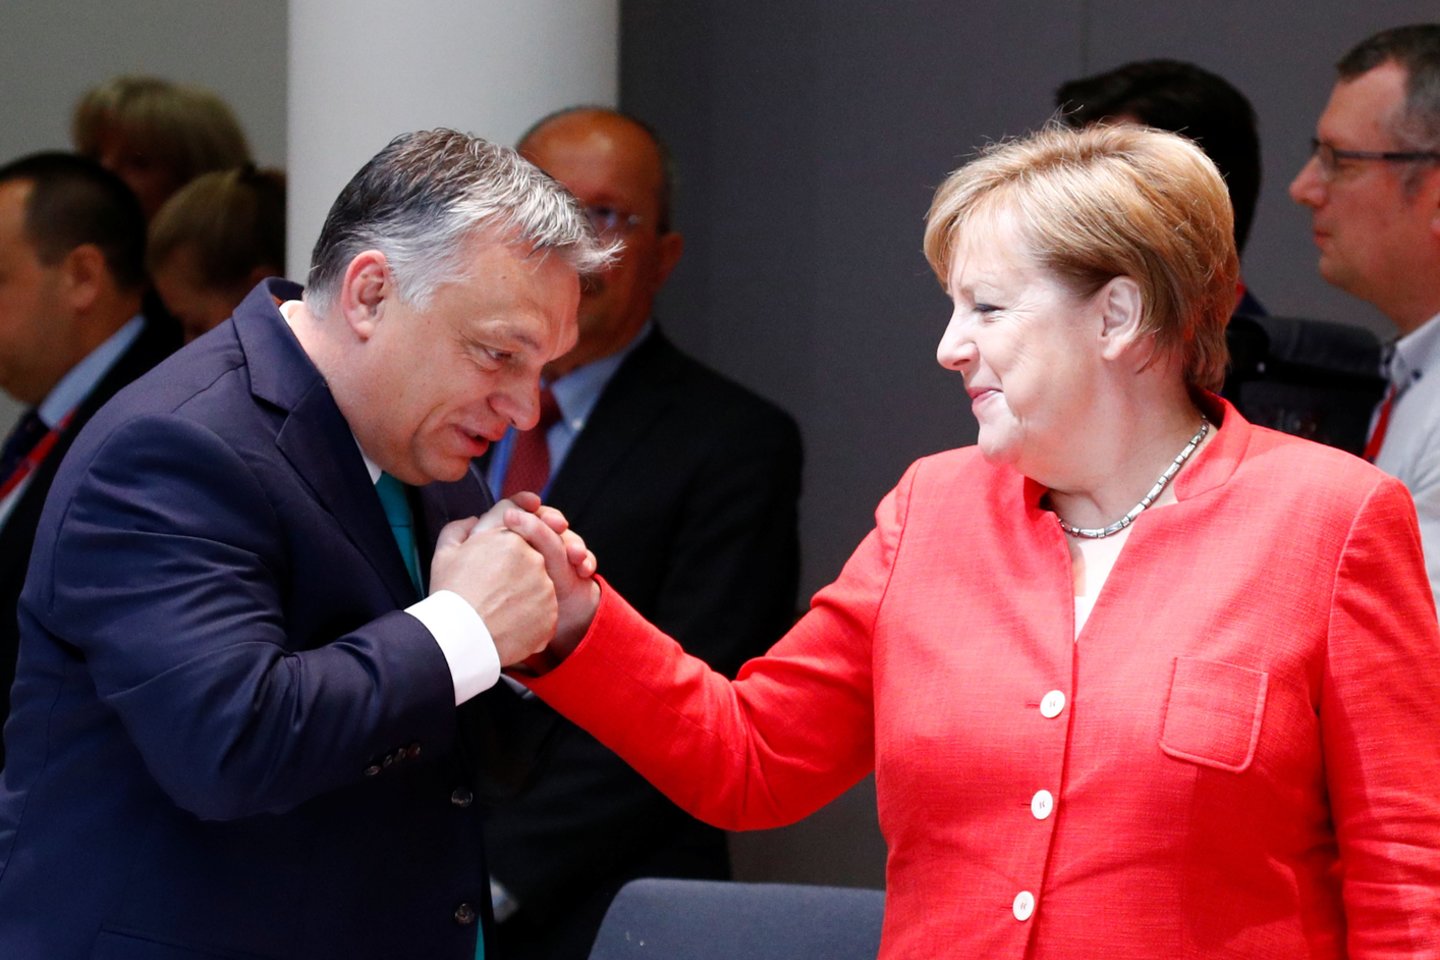 Ne vienus metus Vokietijos vadovė nereagavo į Viktoro Orbano ir Jaroslawo Kaczynskio žaidimą su demokratija.<br>Reuters/Scanpix nuotr.